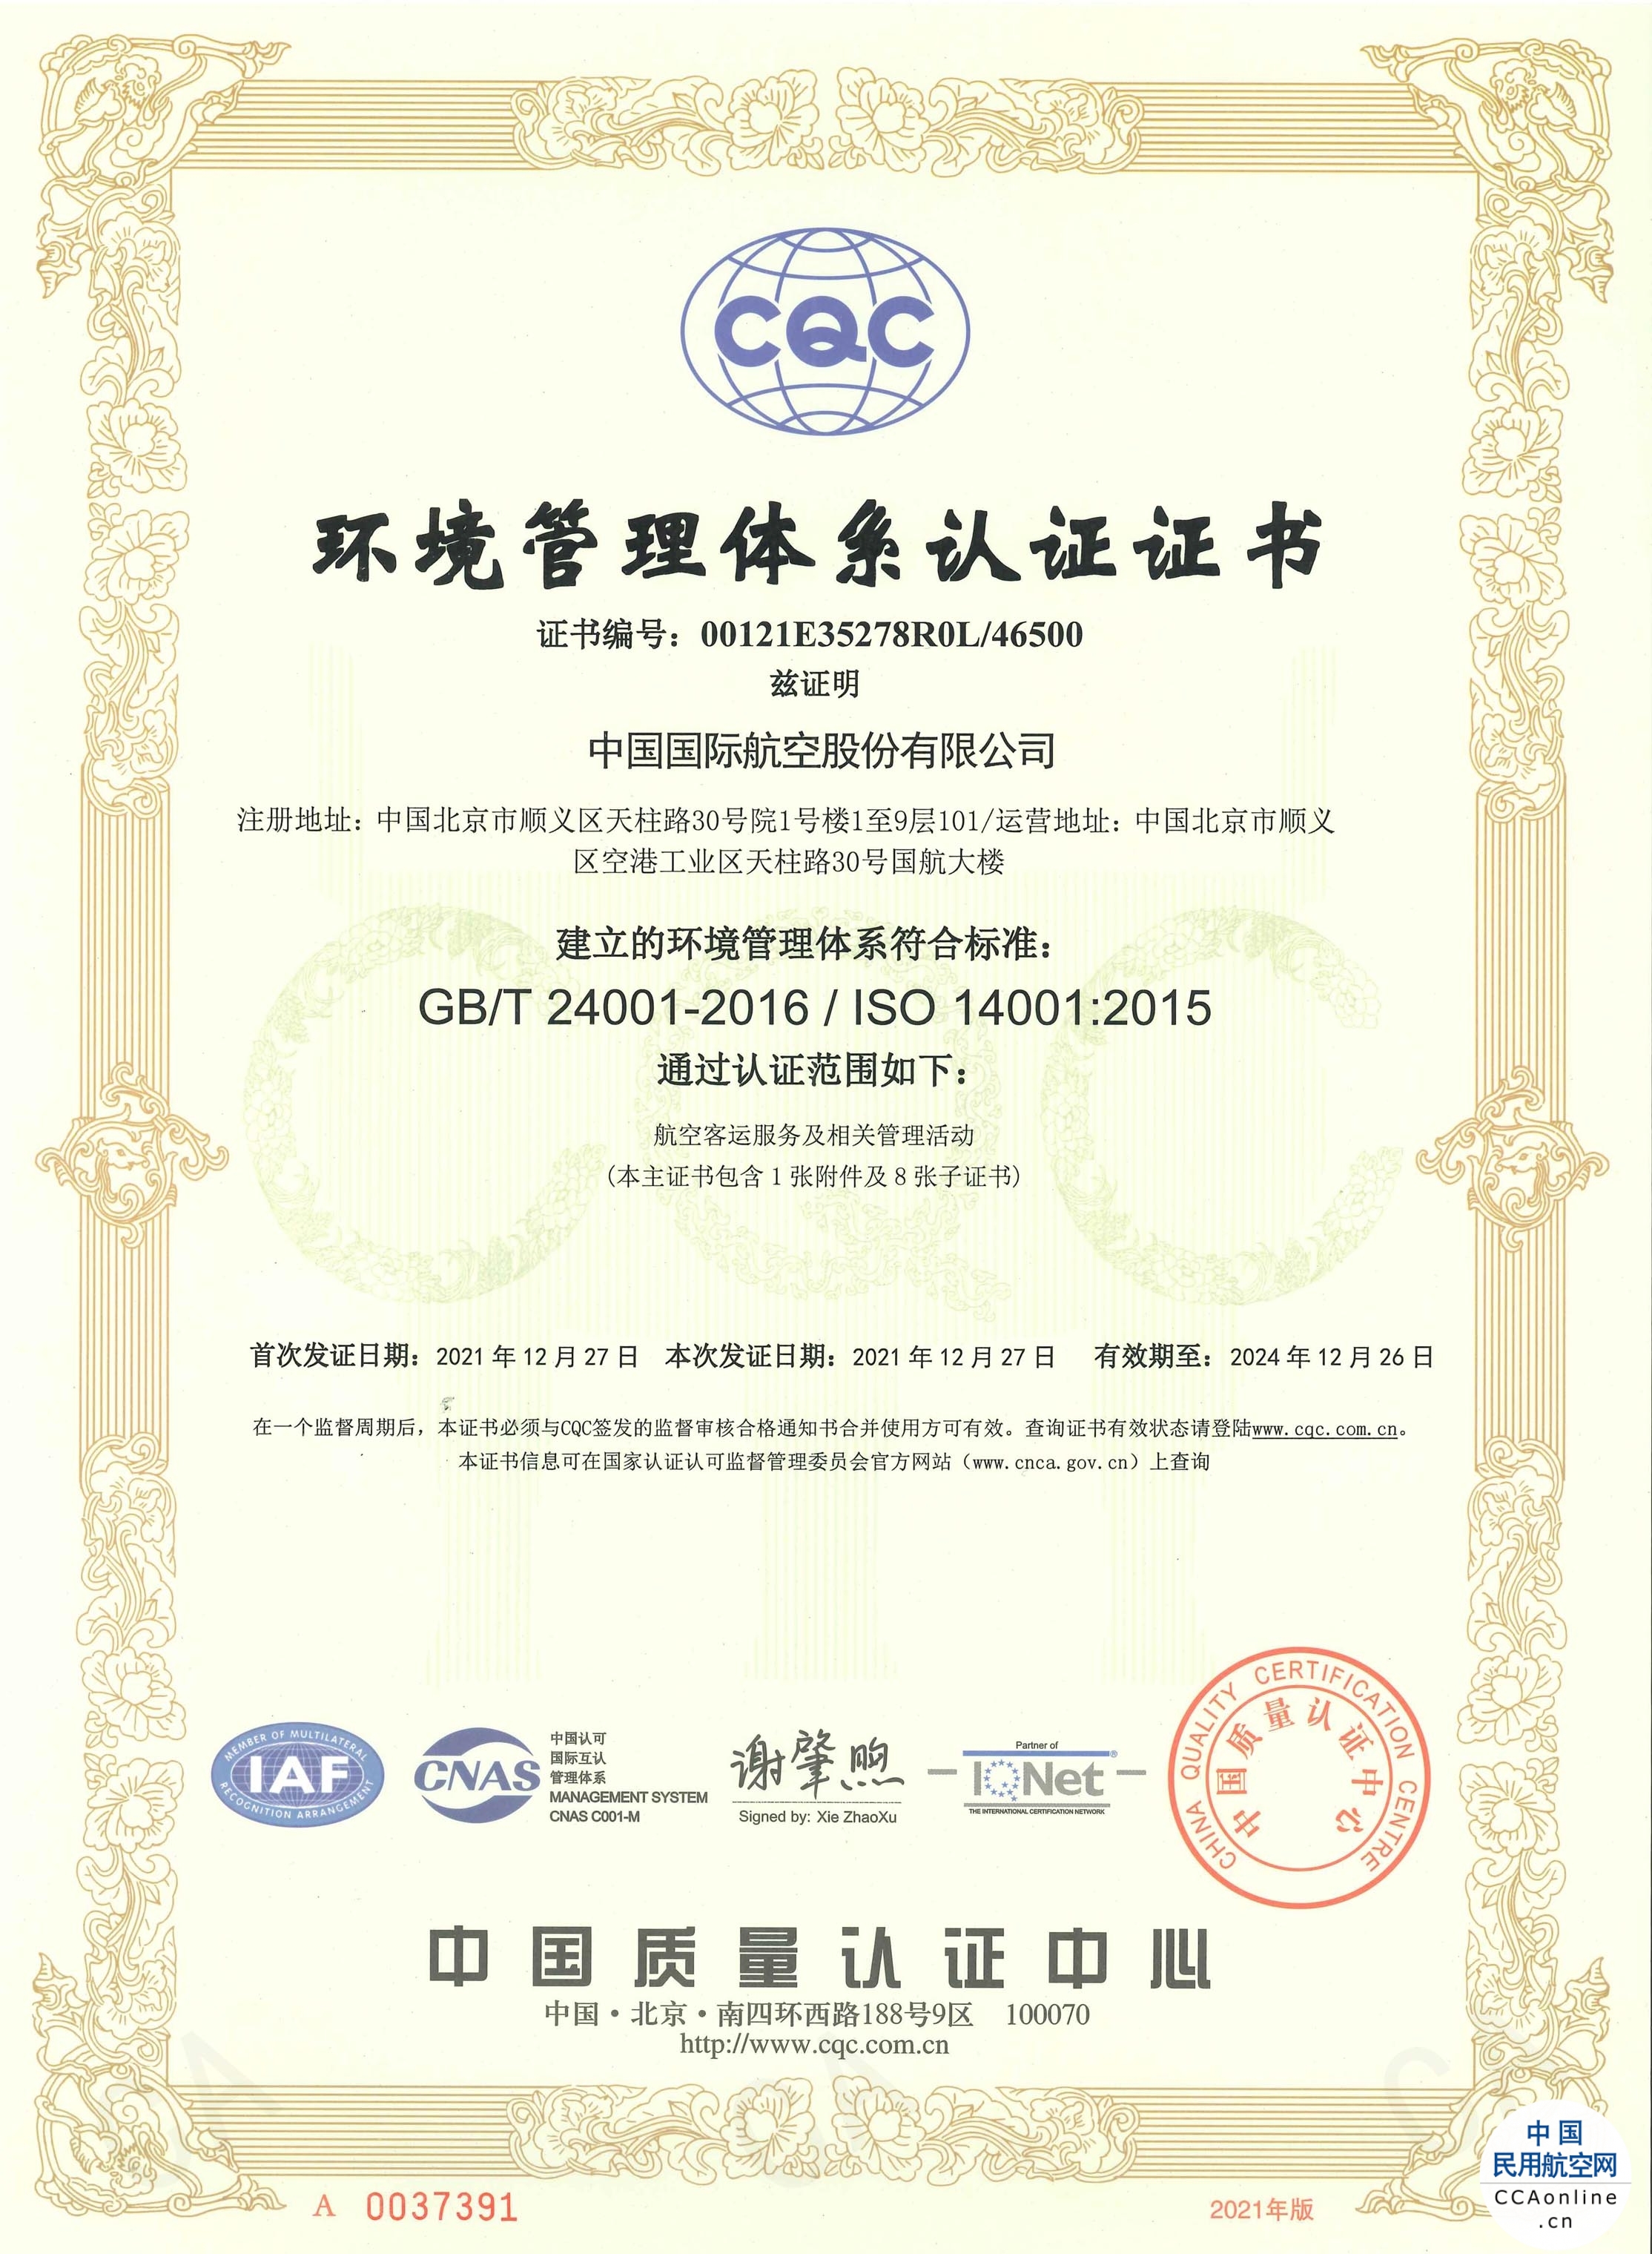 中国国航成为国内首家全面通过环境管理体系认证的航空公司